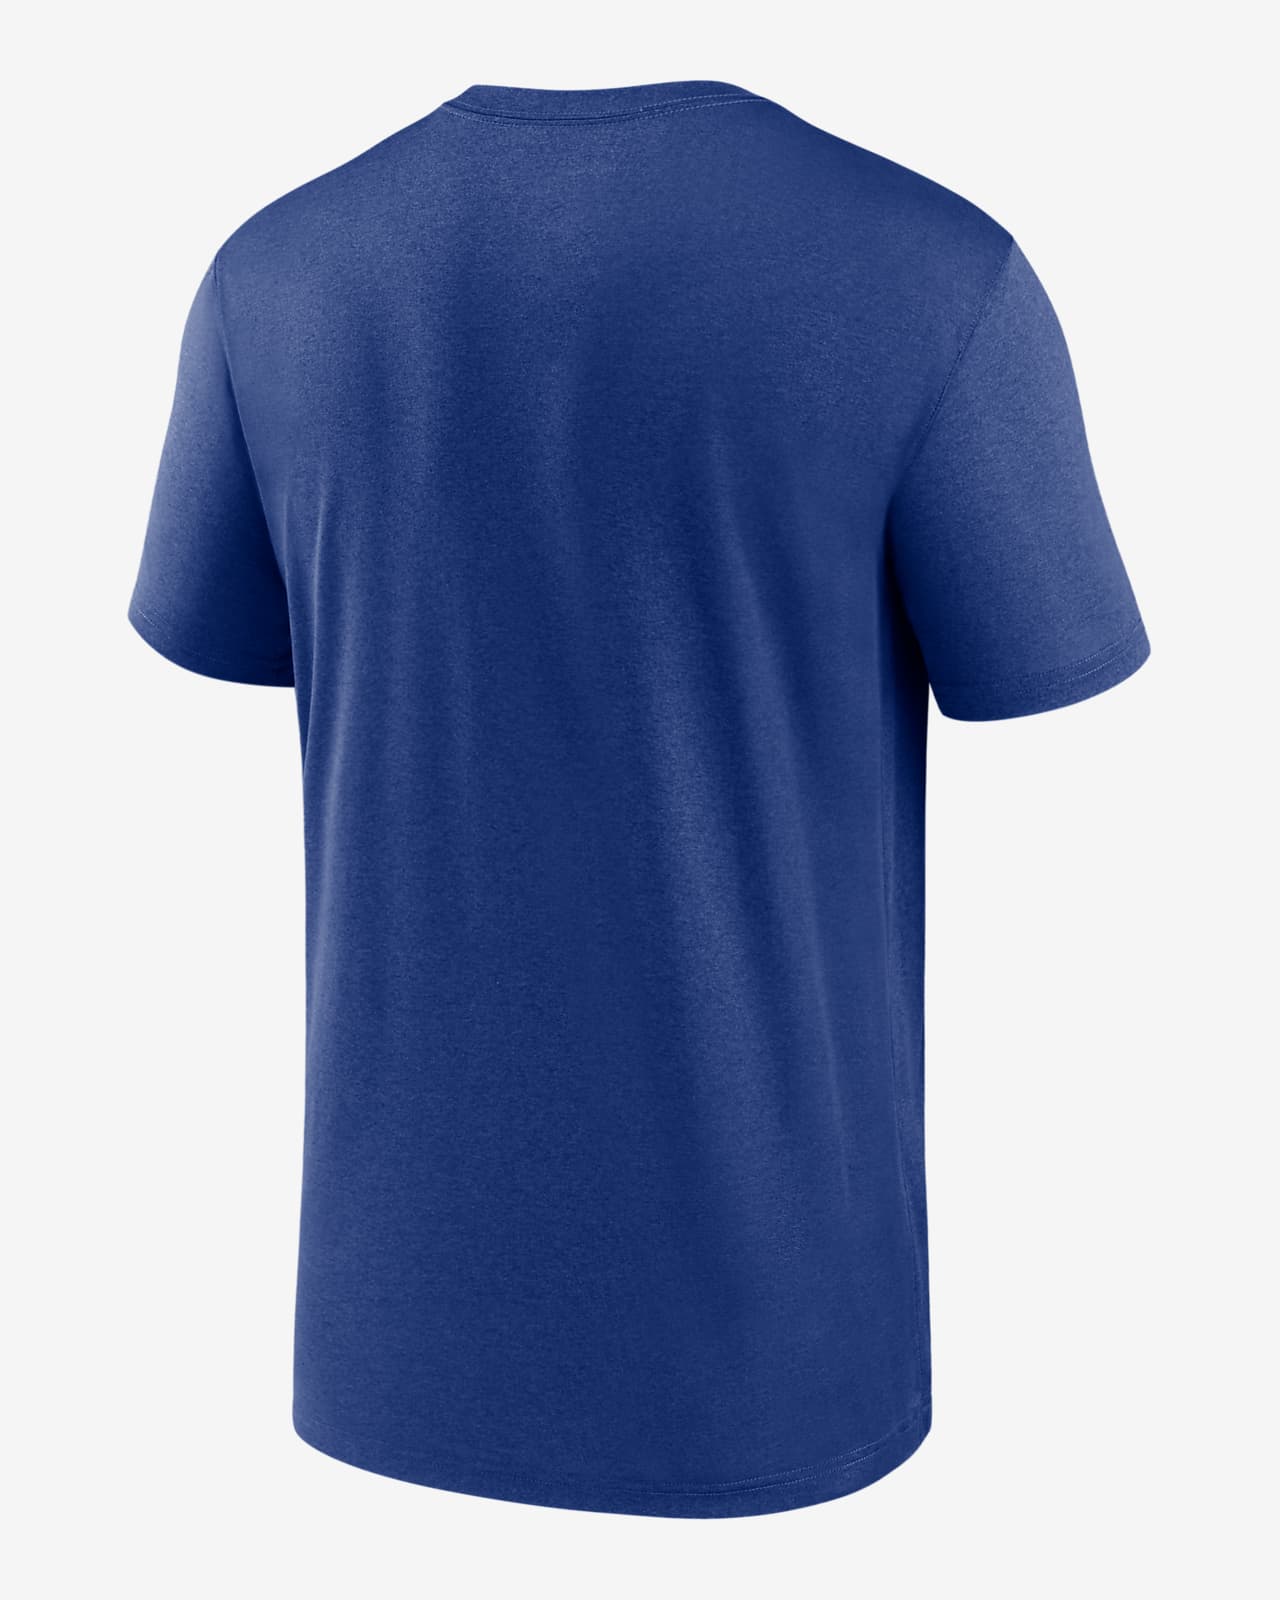 Rangers Football Kits, Cheap Shirts & Shorts